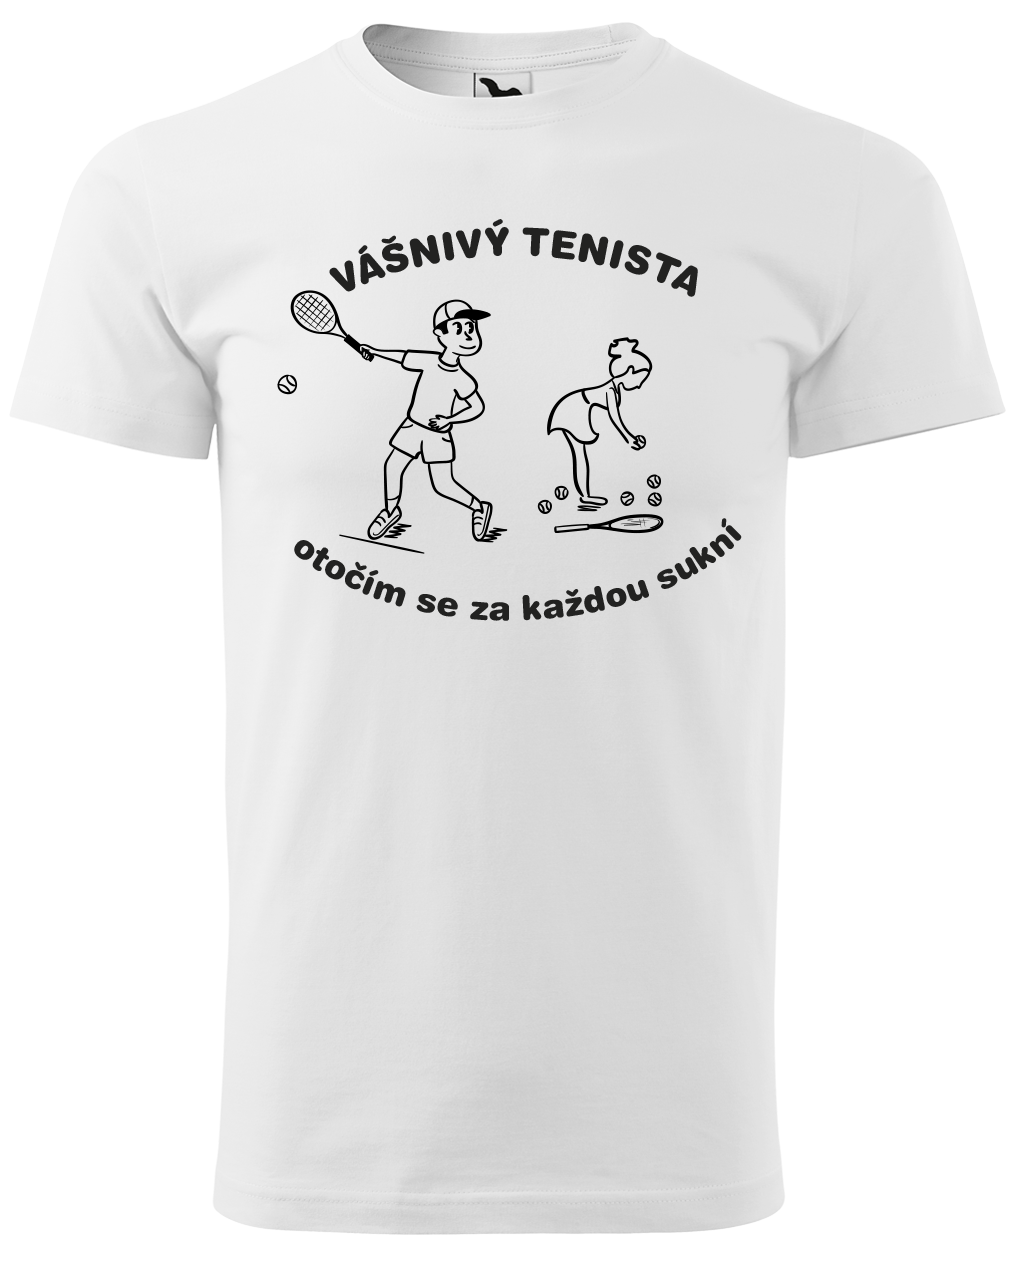 Vtipné tenisové tričko - Vášnivý tenista Velikost: L, Barva: Bílá (00)